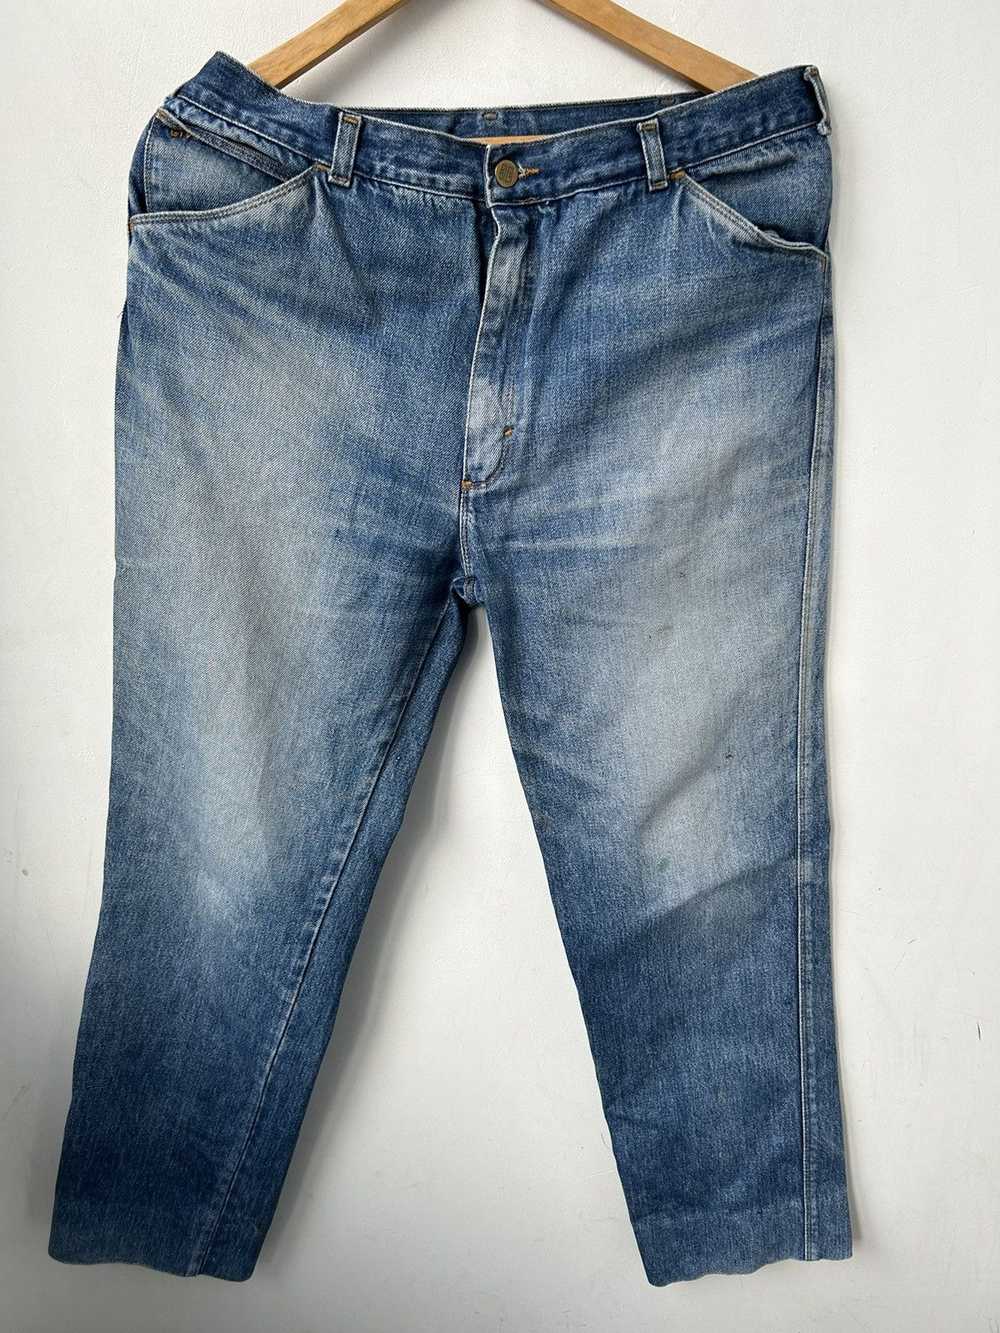 Givenchy × Streetwear × Vintage Vintage jeans - image 4